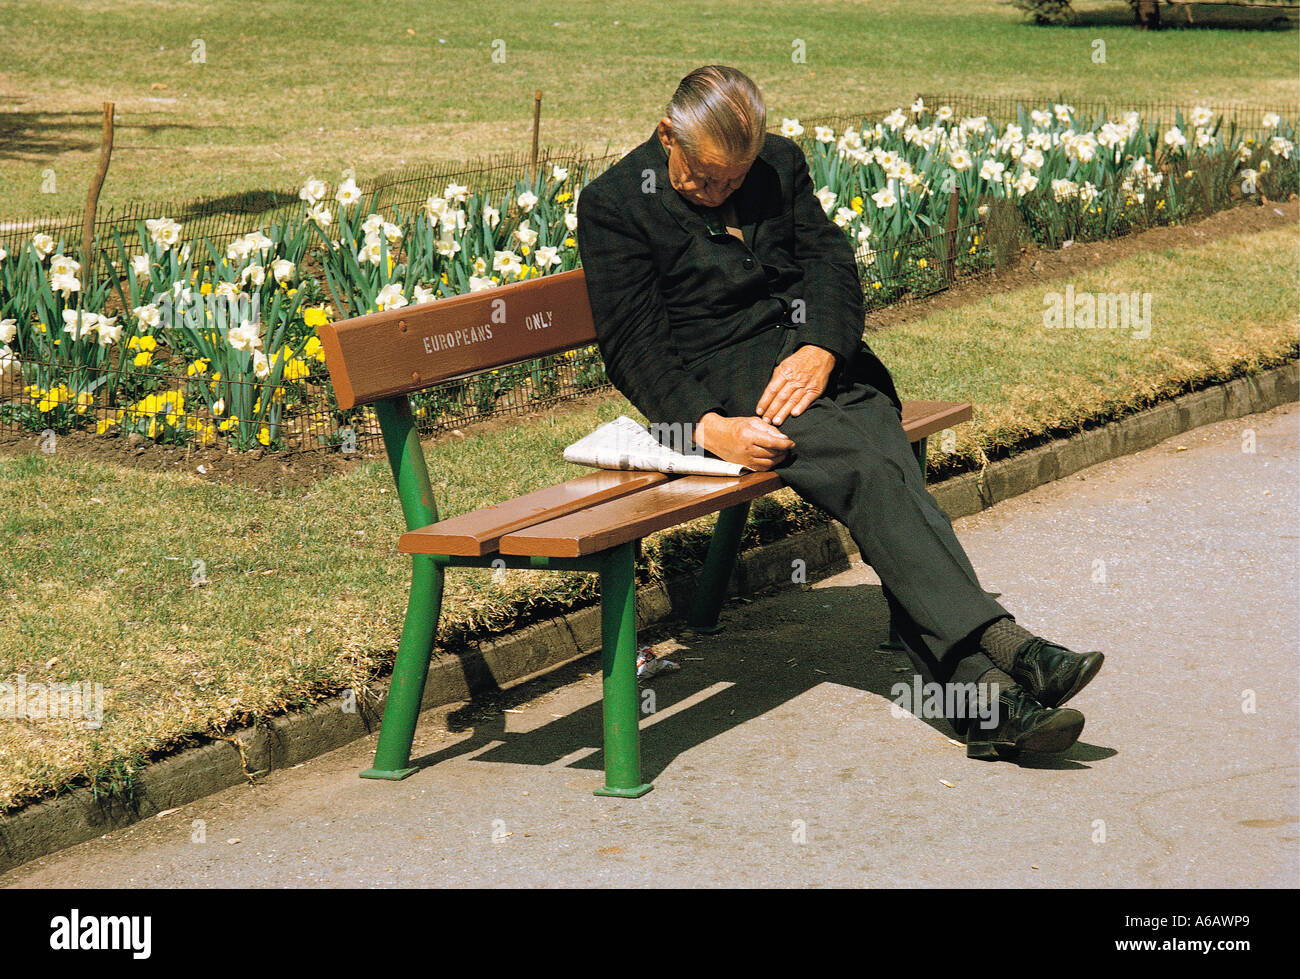 Personnes âgées white man sleeping on européens seulement banc de parc en Joubert Park à Johannesburg Afrique du Sud prise en 1973 Banque D'Images